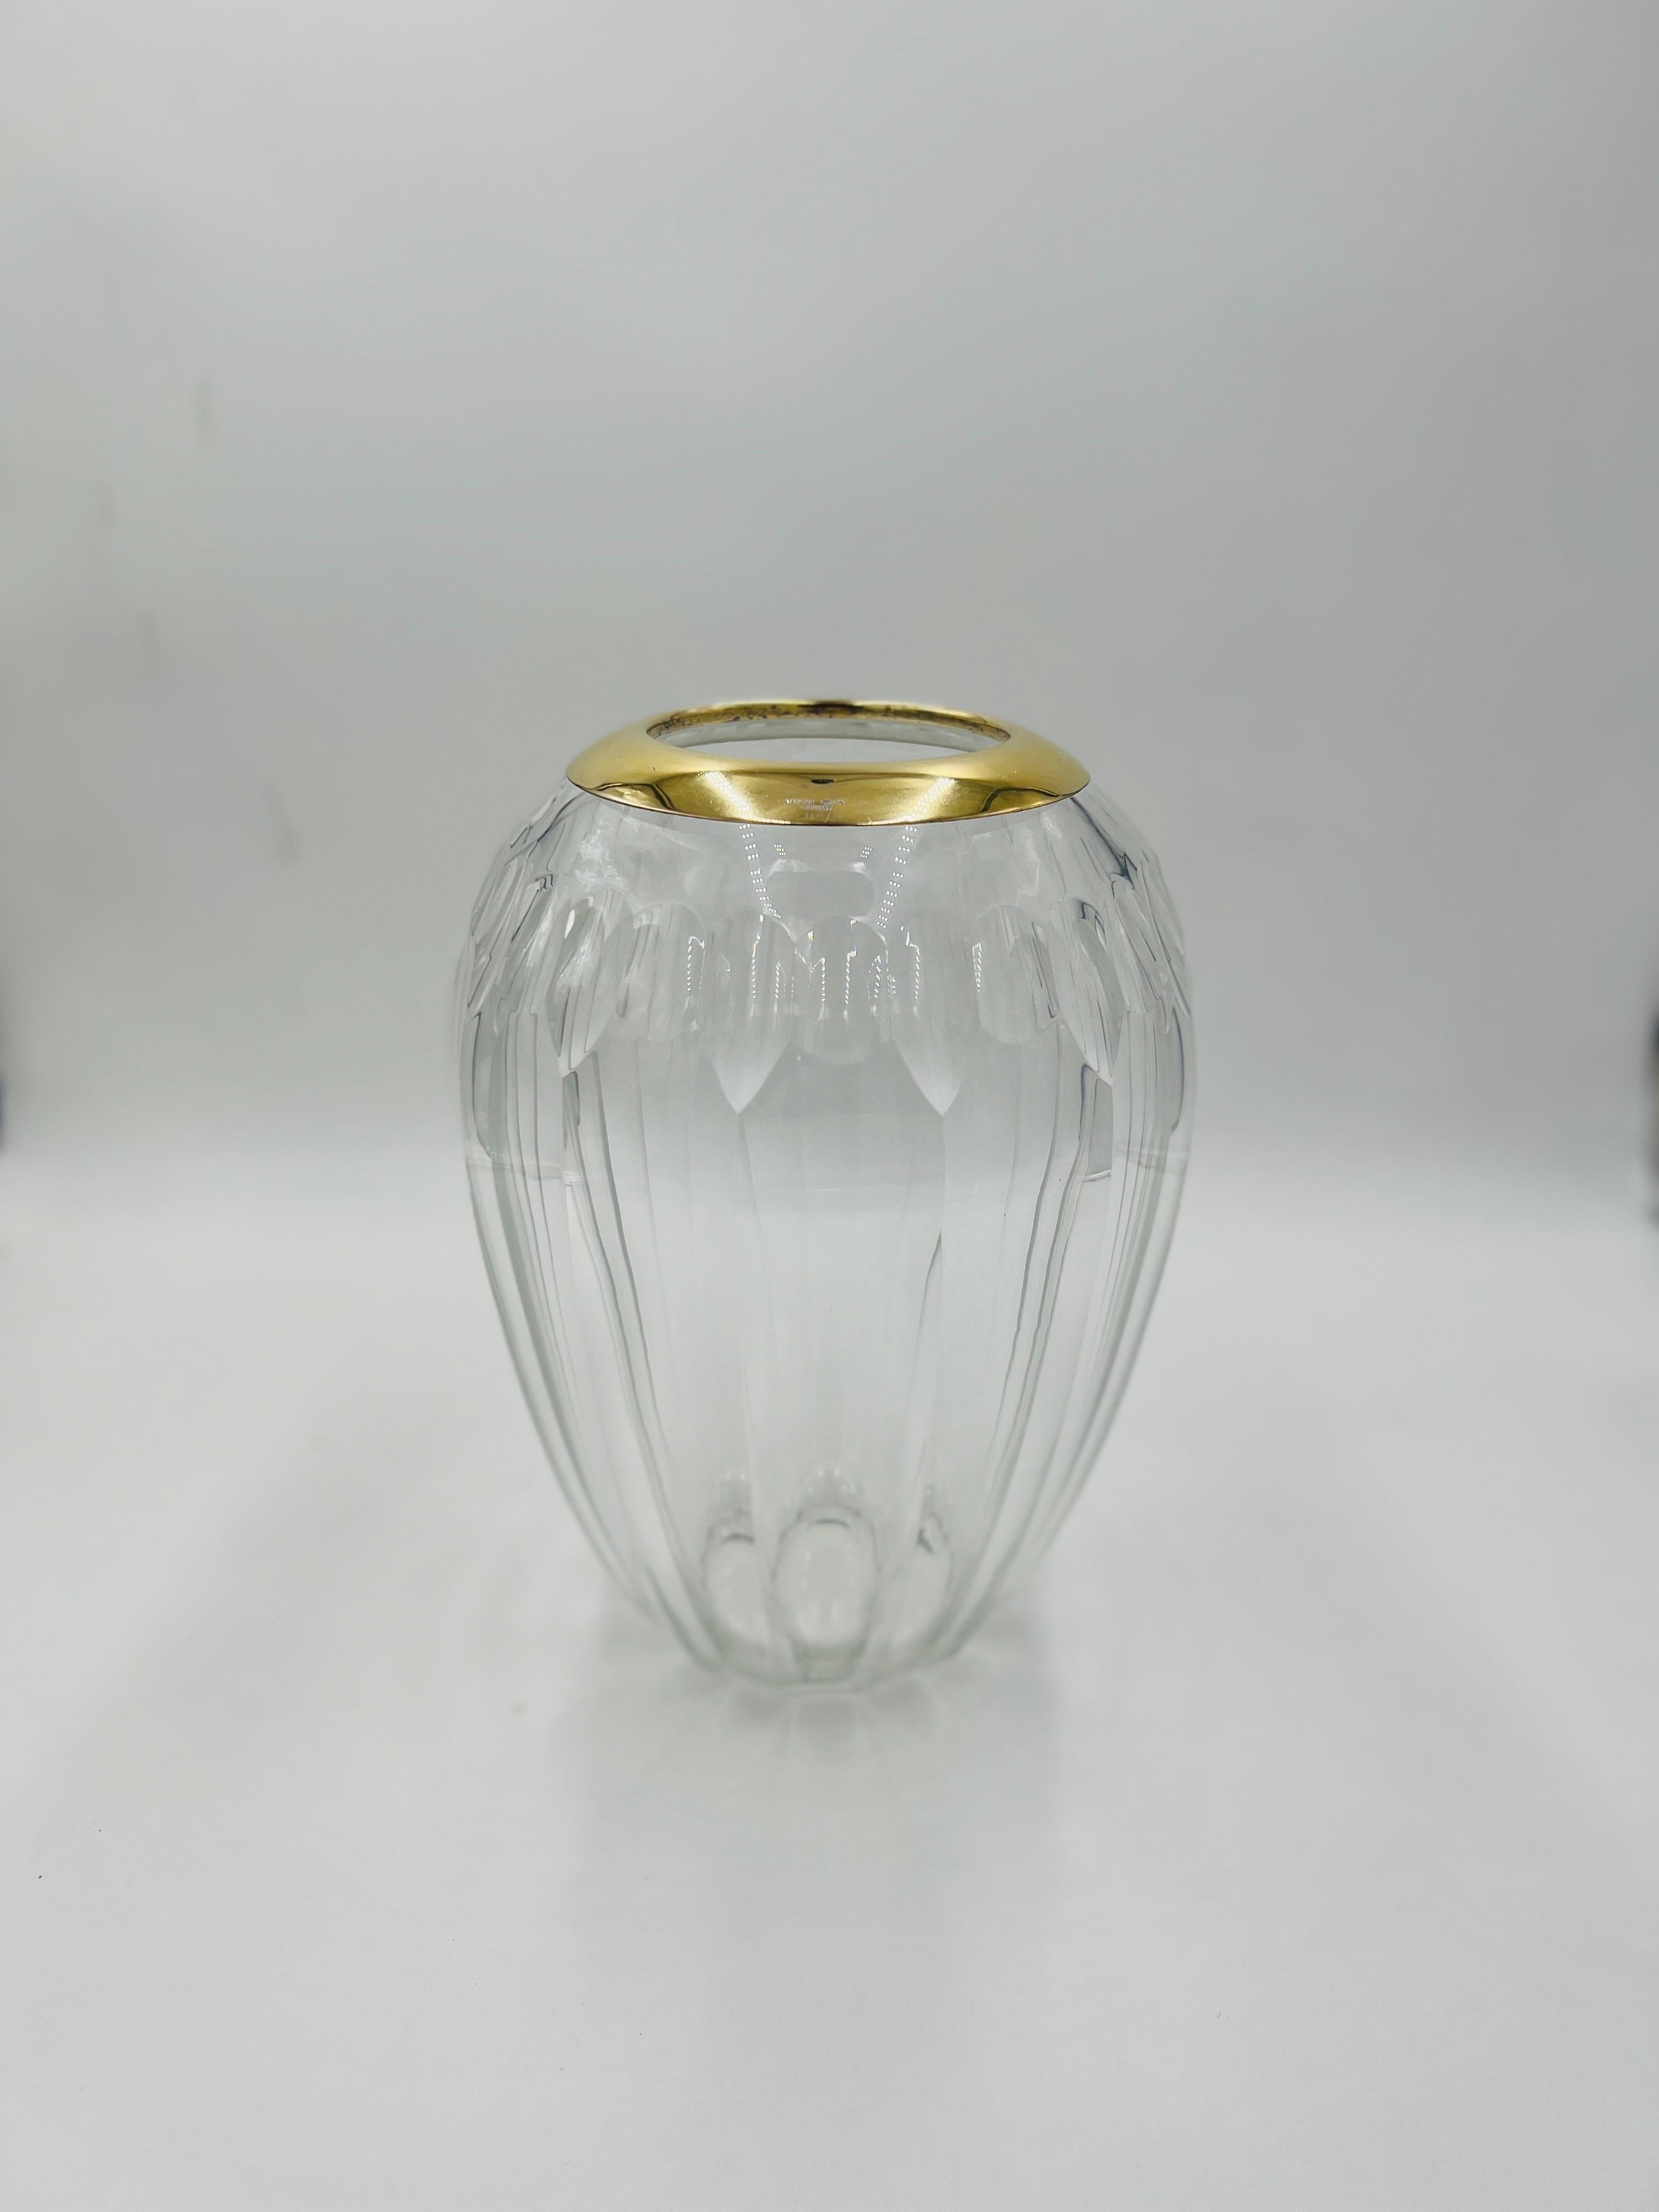 Un vase en cristal à bandes d'or et d'argent sterling de Tiffany & Company. Le vase est en cristal taillé allemand avec des facettes sur le corps principal. Marqué 